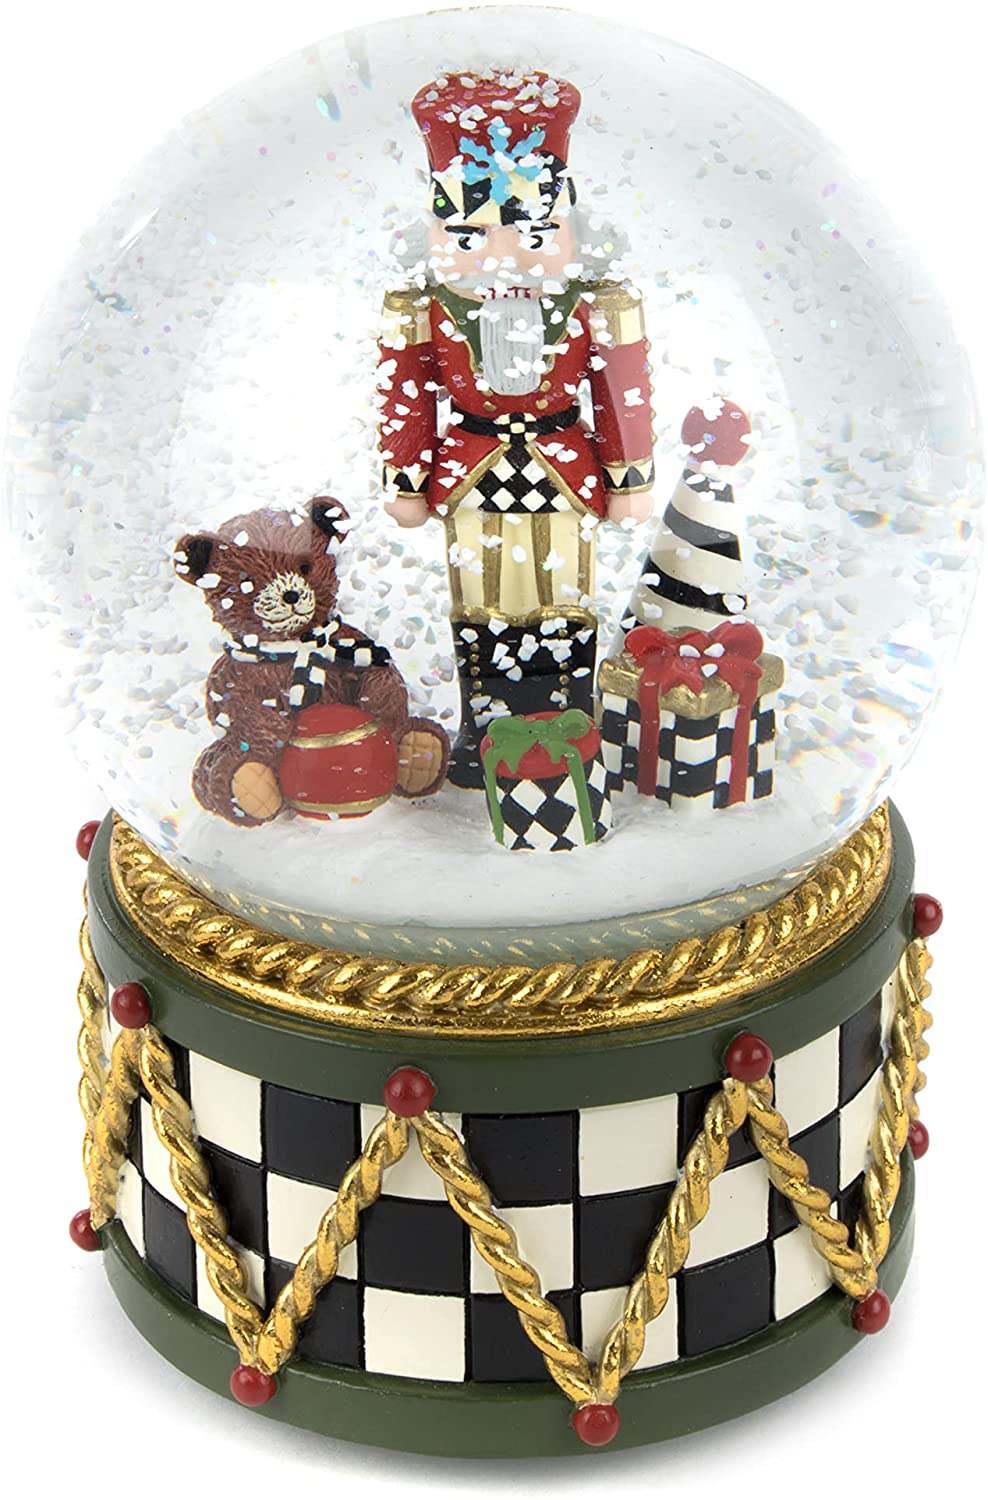 Mackenzie-Childs Nutcracker Christmas Snow Globe New With Box